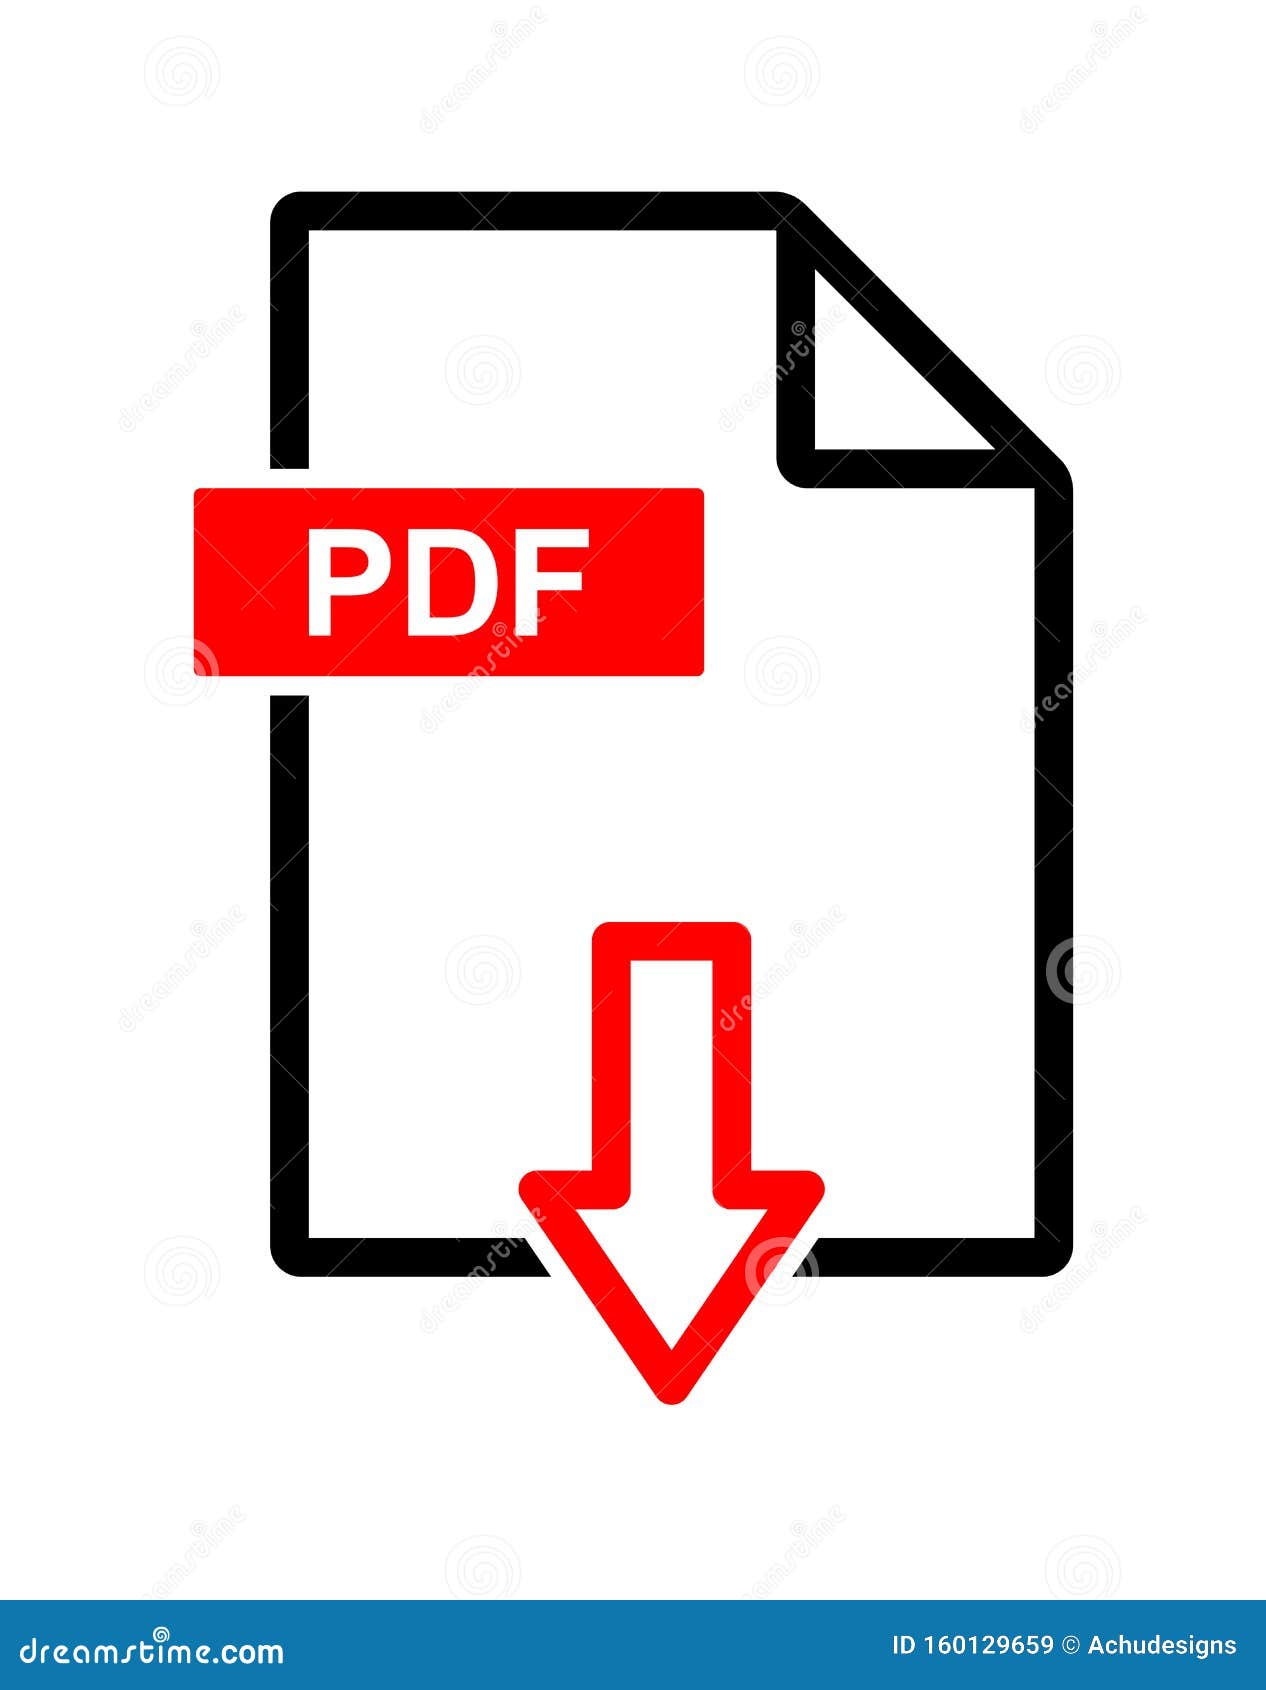 PDF file download: Nhanh chóng tải xuống các tệp PDF độc đáo và hữu ích, mang đến cho bạn những kiến thức mới và sáng tạo. Nhấn để khám phá thêm!